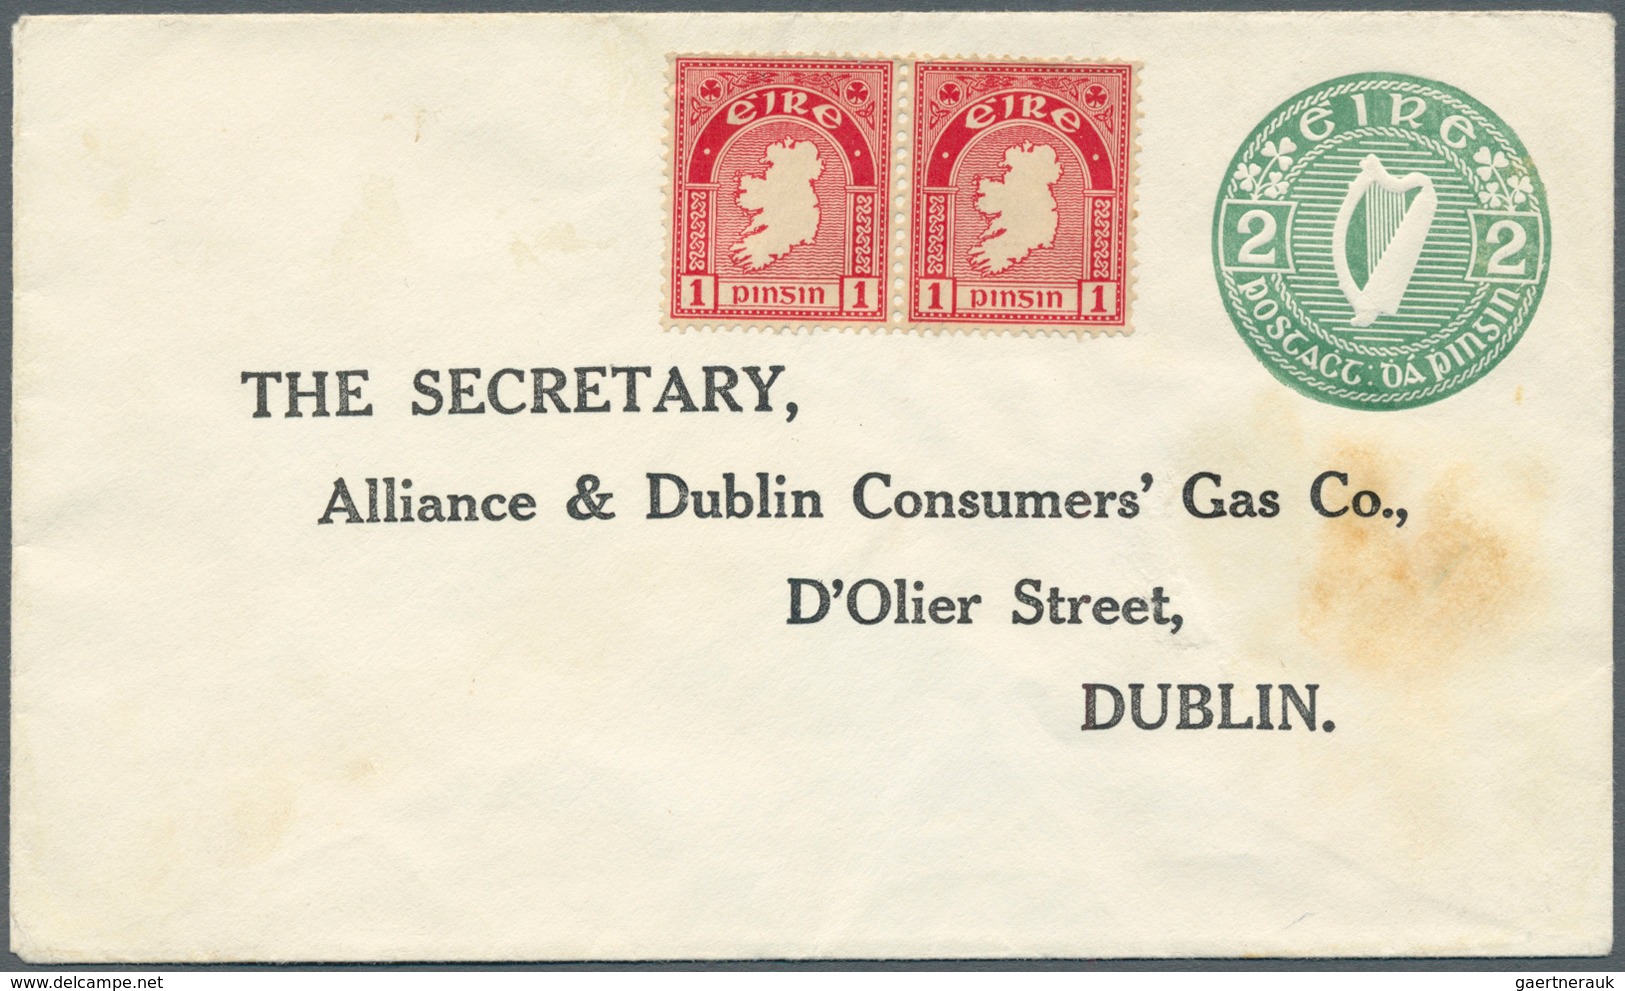 14439 Irland - Ganzsachen: Alliance & Dublin Consumers' Gas Co., Dublin: 1/2 D. Pale Green, 1 D. Red And 2 - Ganzsachen